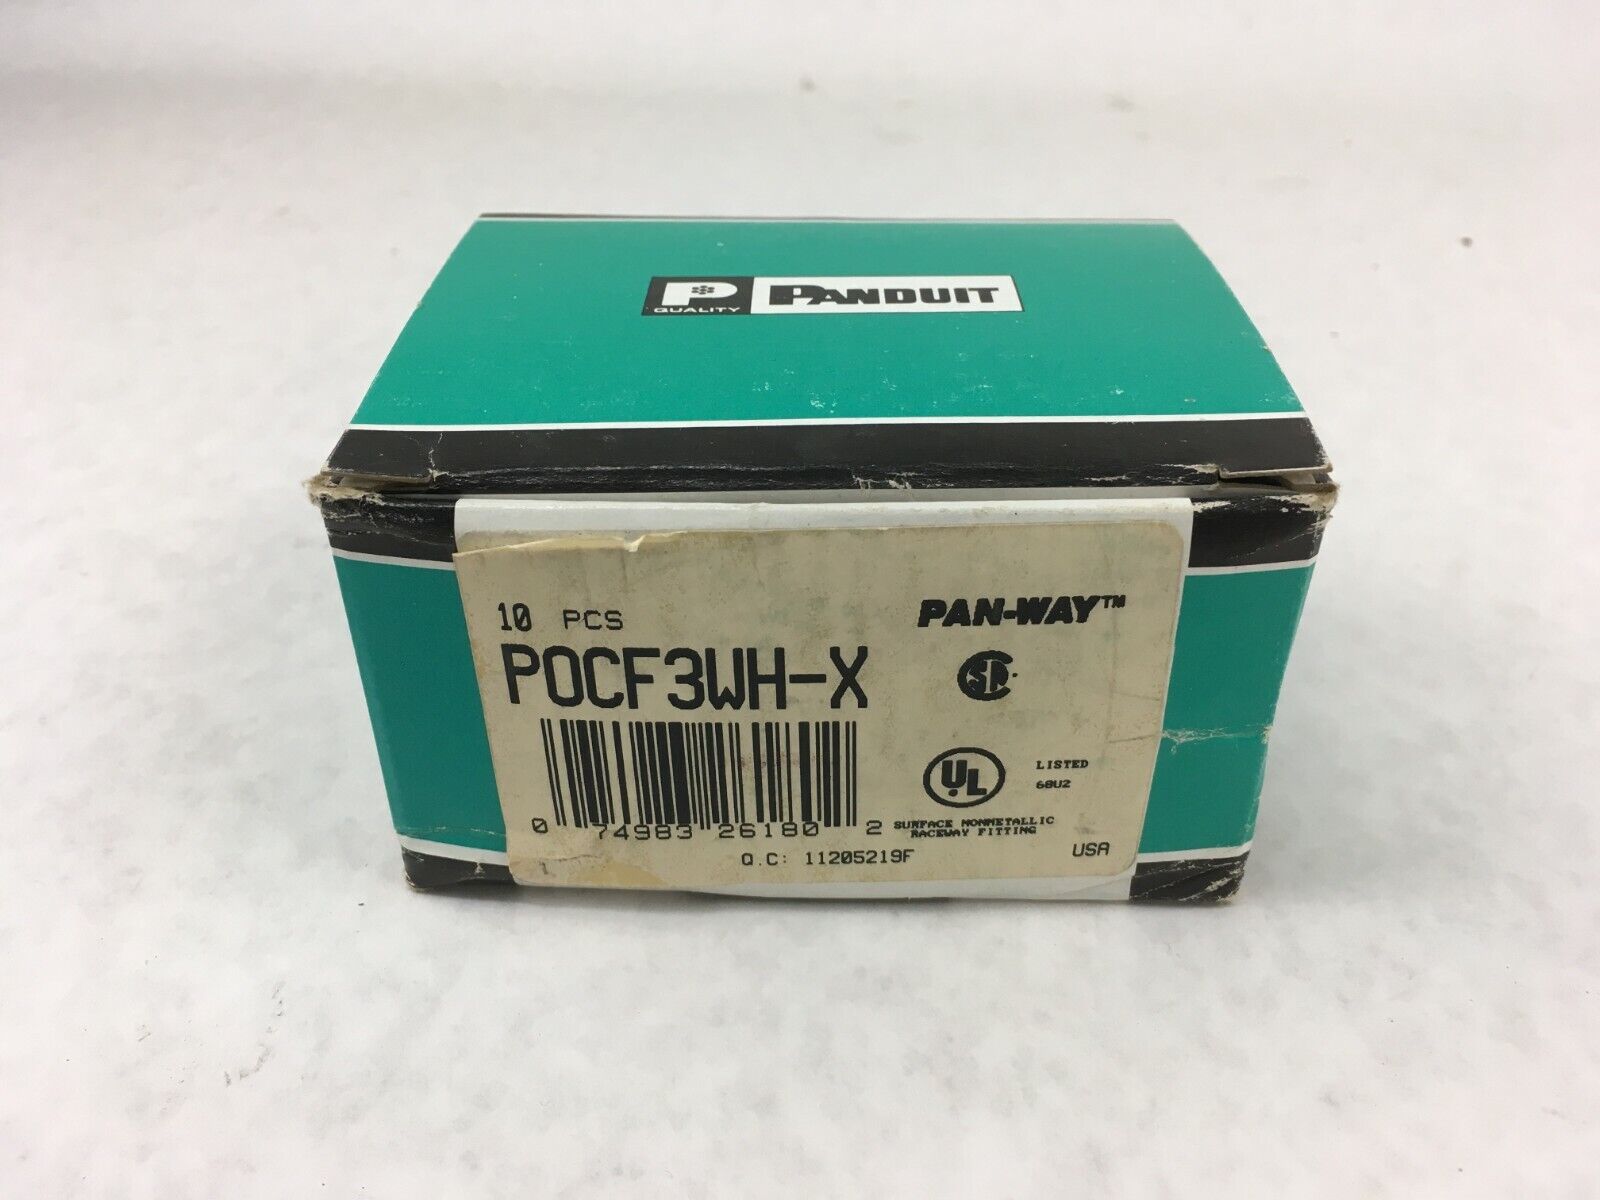 Panduit Pan-Way POCF3WH-X FIT PD3 Box of 10